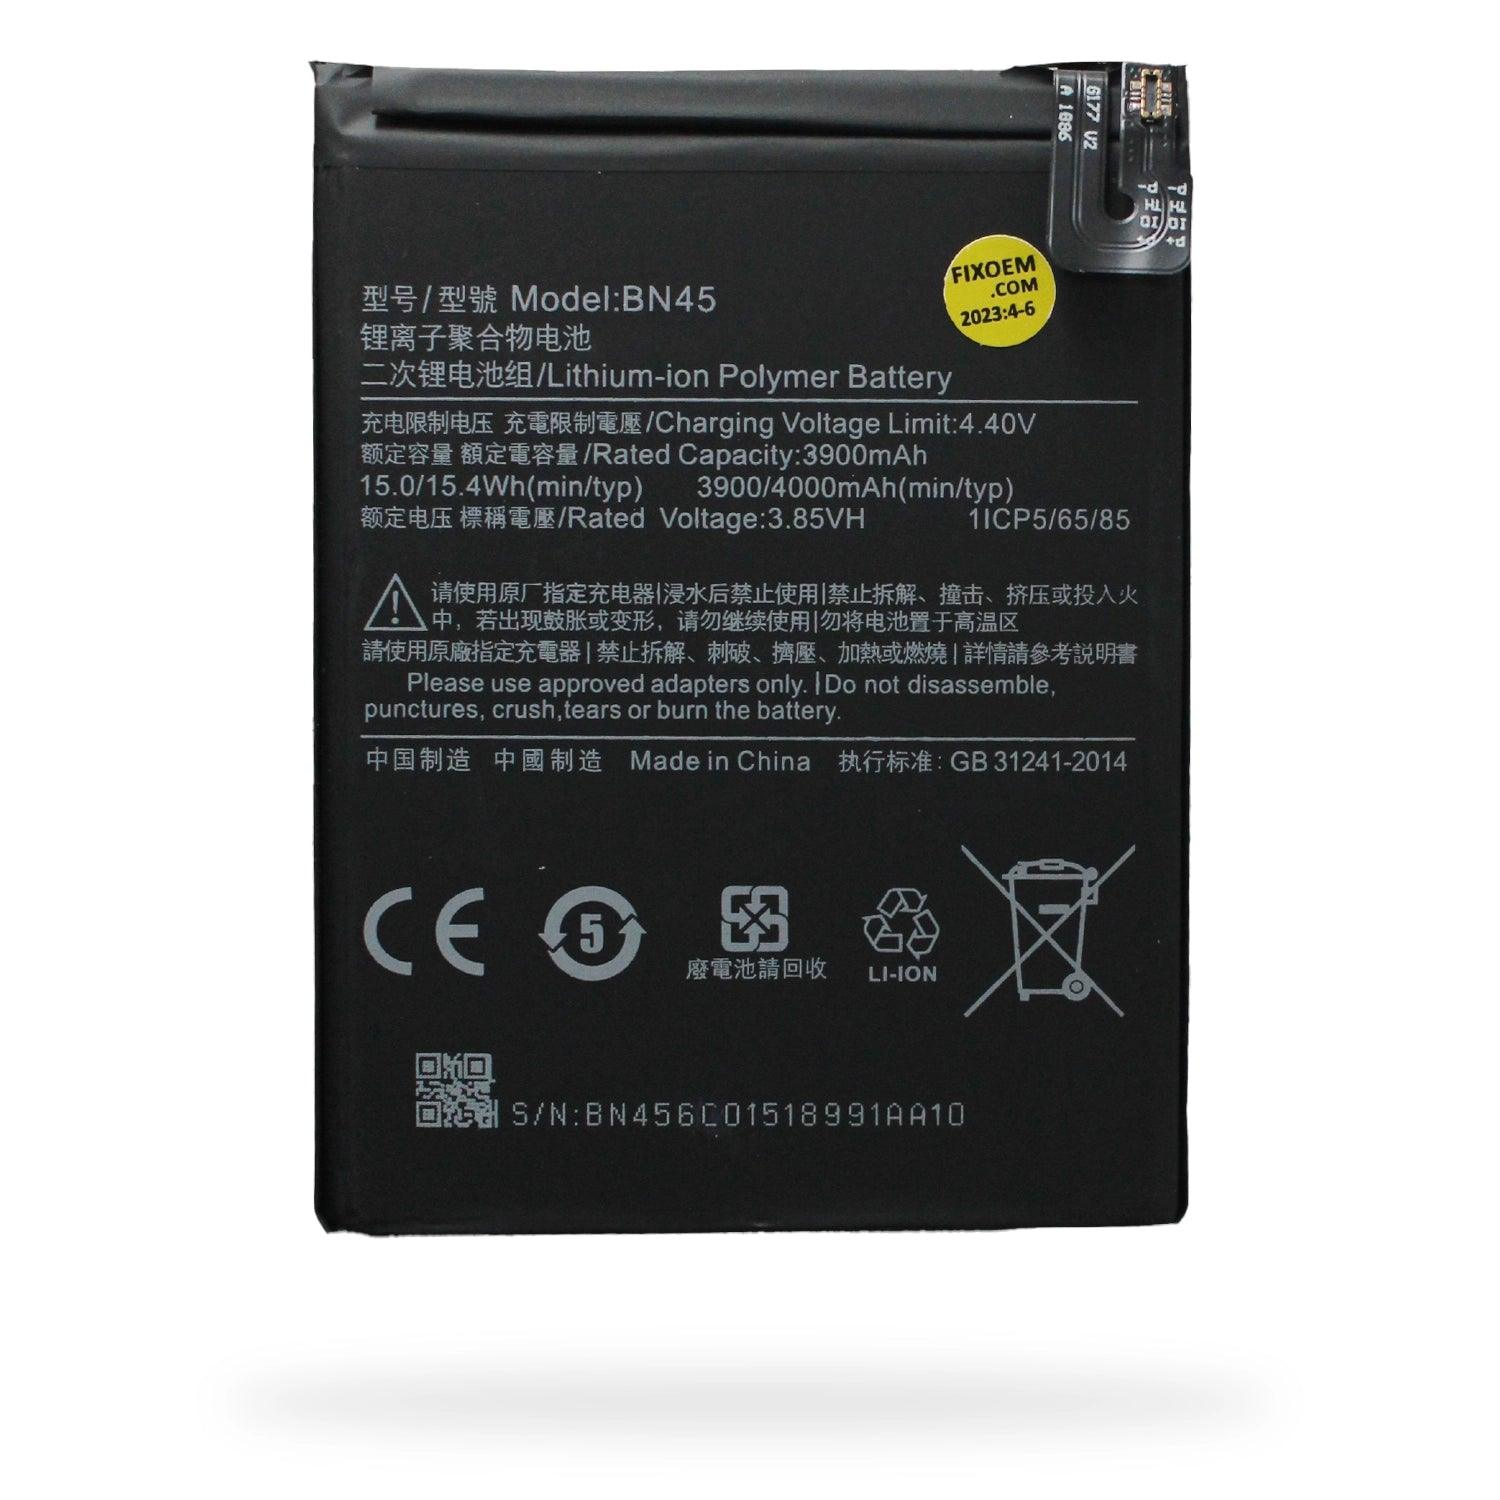 Bateria Xiaomi Redmi Note 5 M1803E7Sh Bn45 a solo $ 120.00 Refaccion y puestos celulares, refurbish y microelectronica.- FixOEM